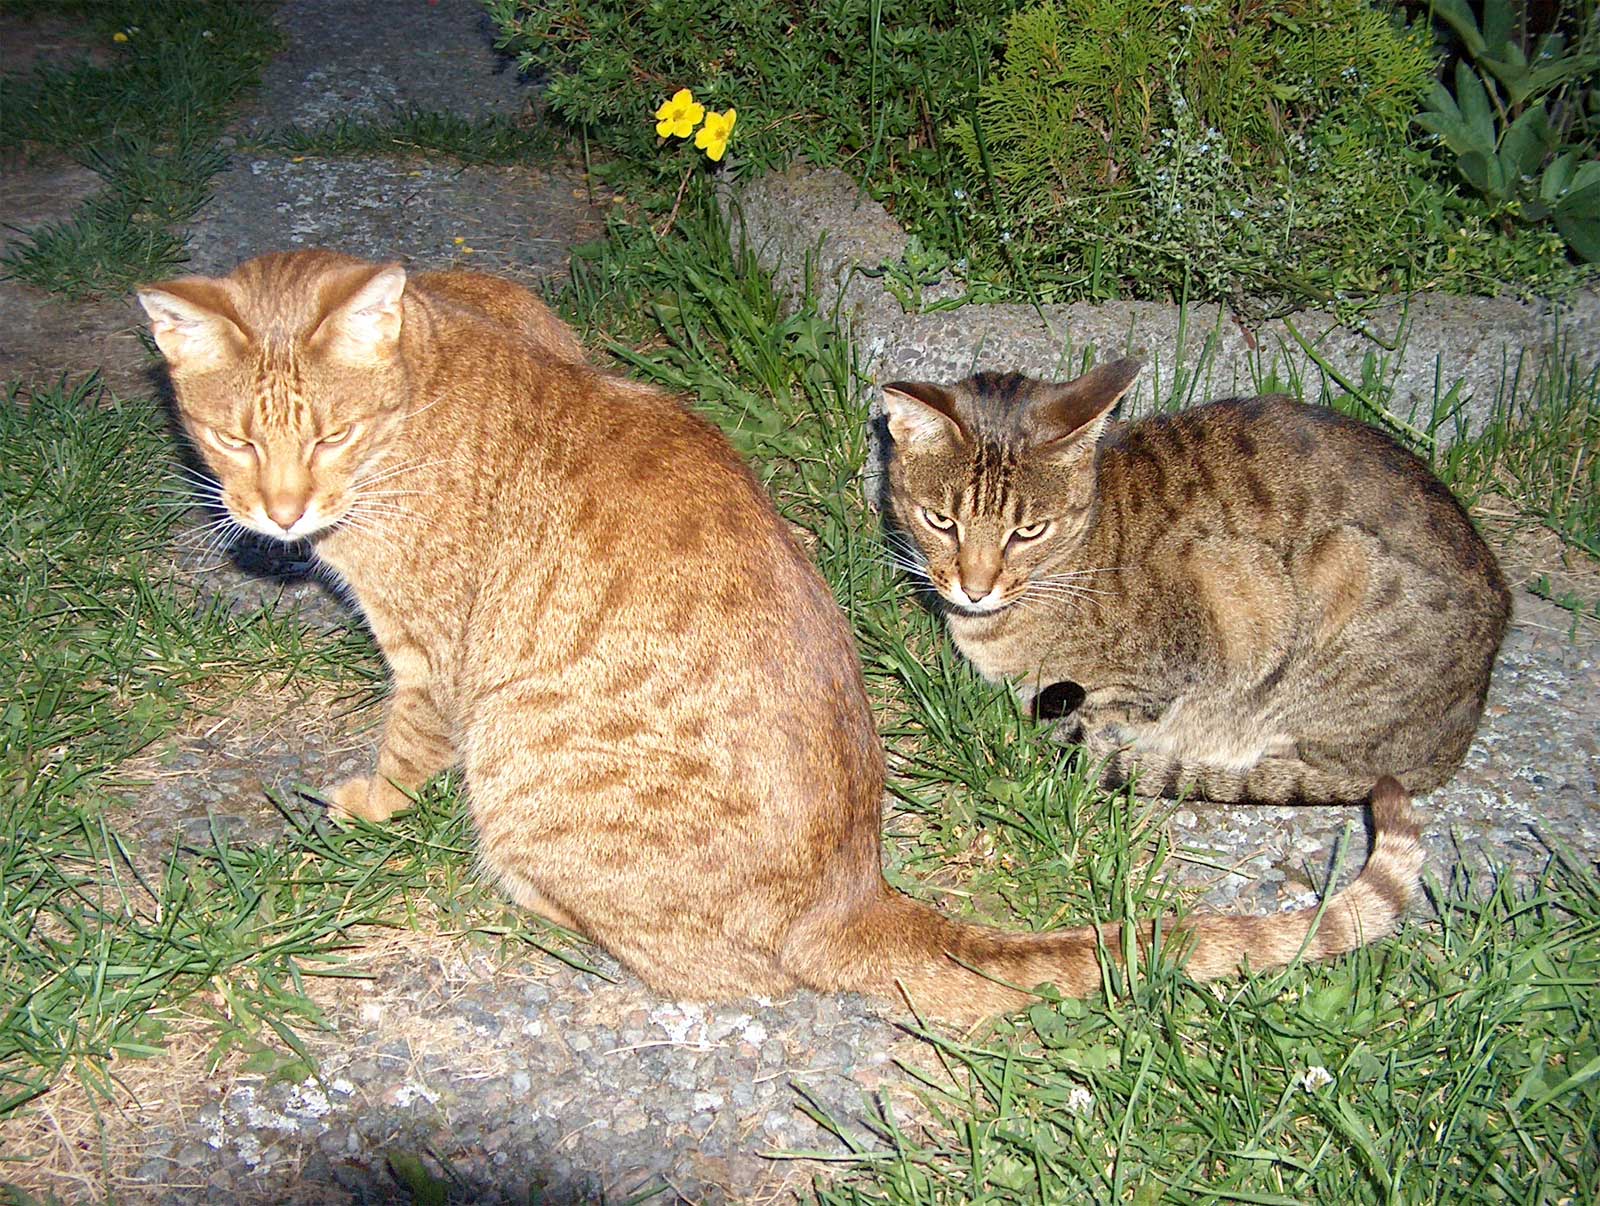 Two Ocicat cats wallpaper